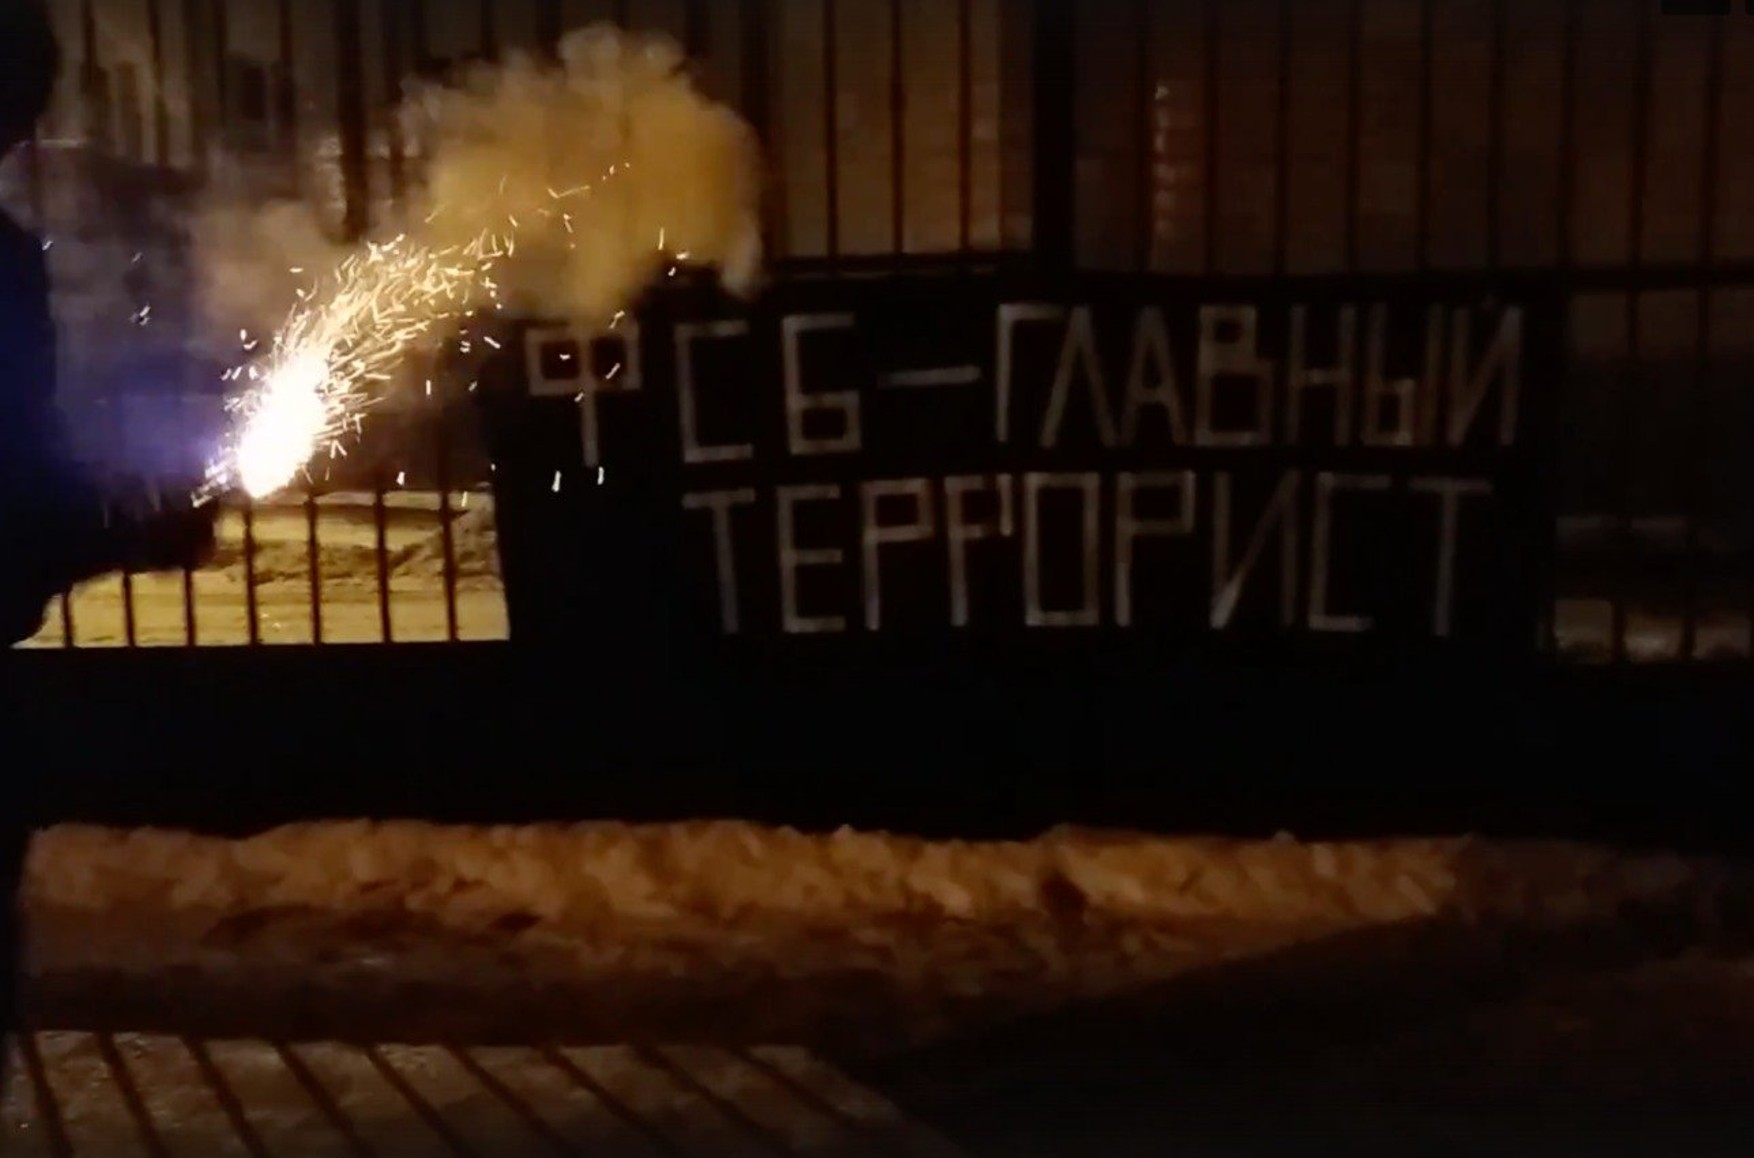 У Челябінську звинувачення зажадало для сім'ї анархістів по шість років колонії за банер «ФСБ - головний терорист»